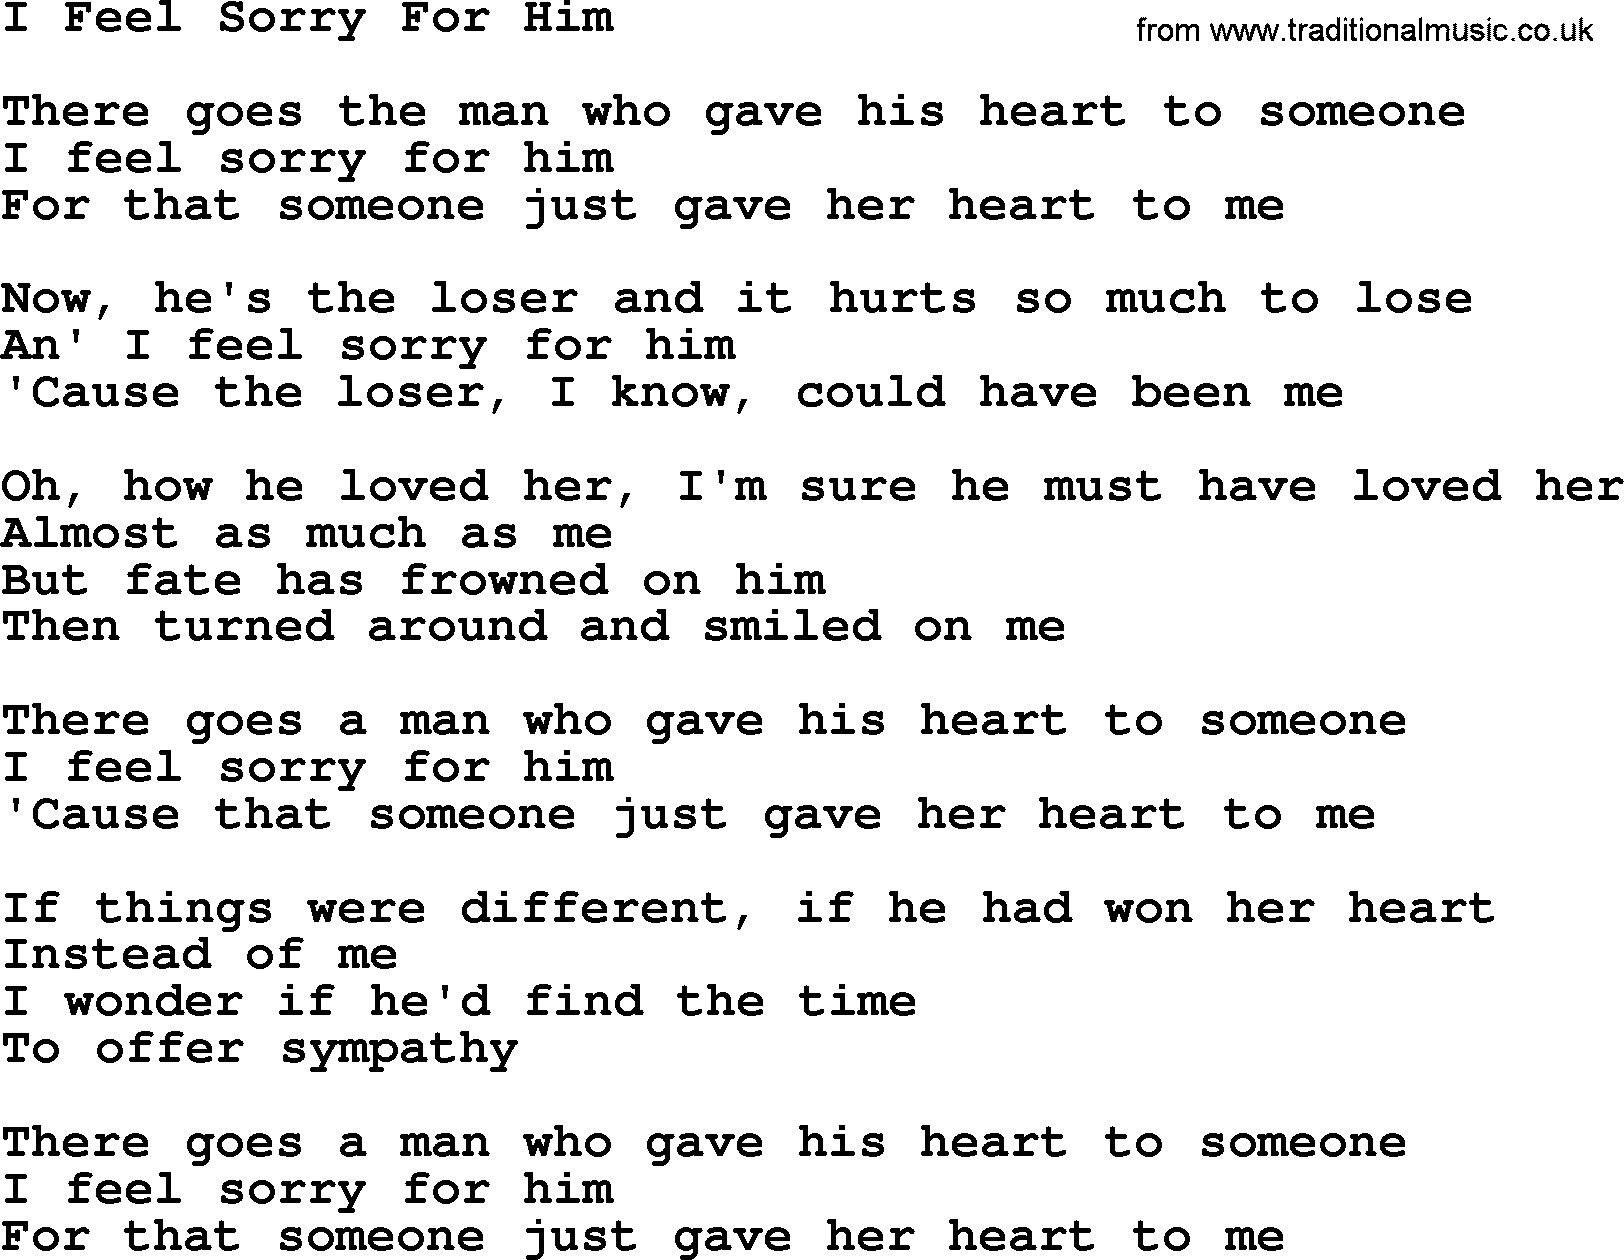 Willie Nelson song: I Feel Sorry For Him lyrics